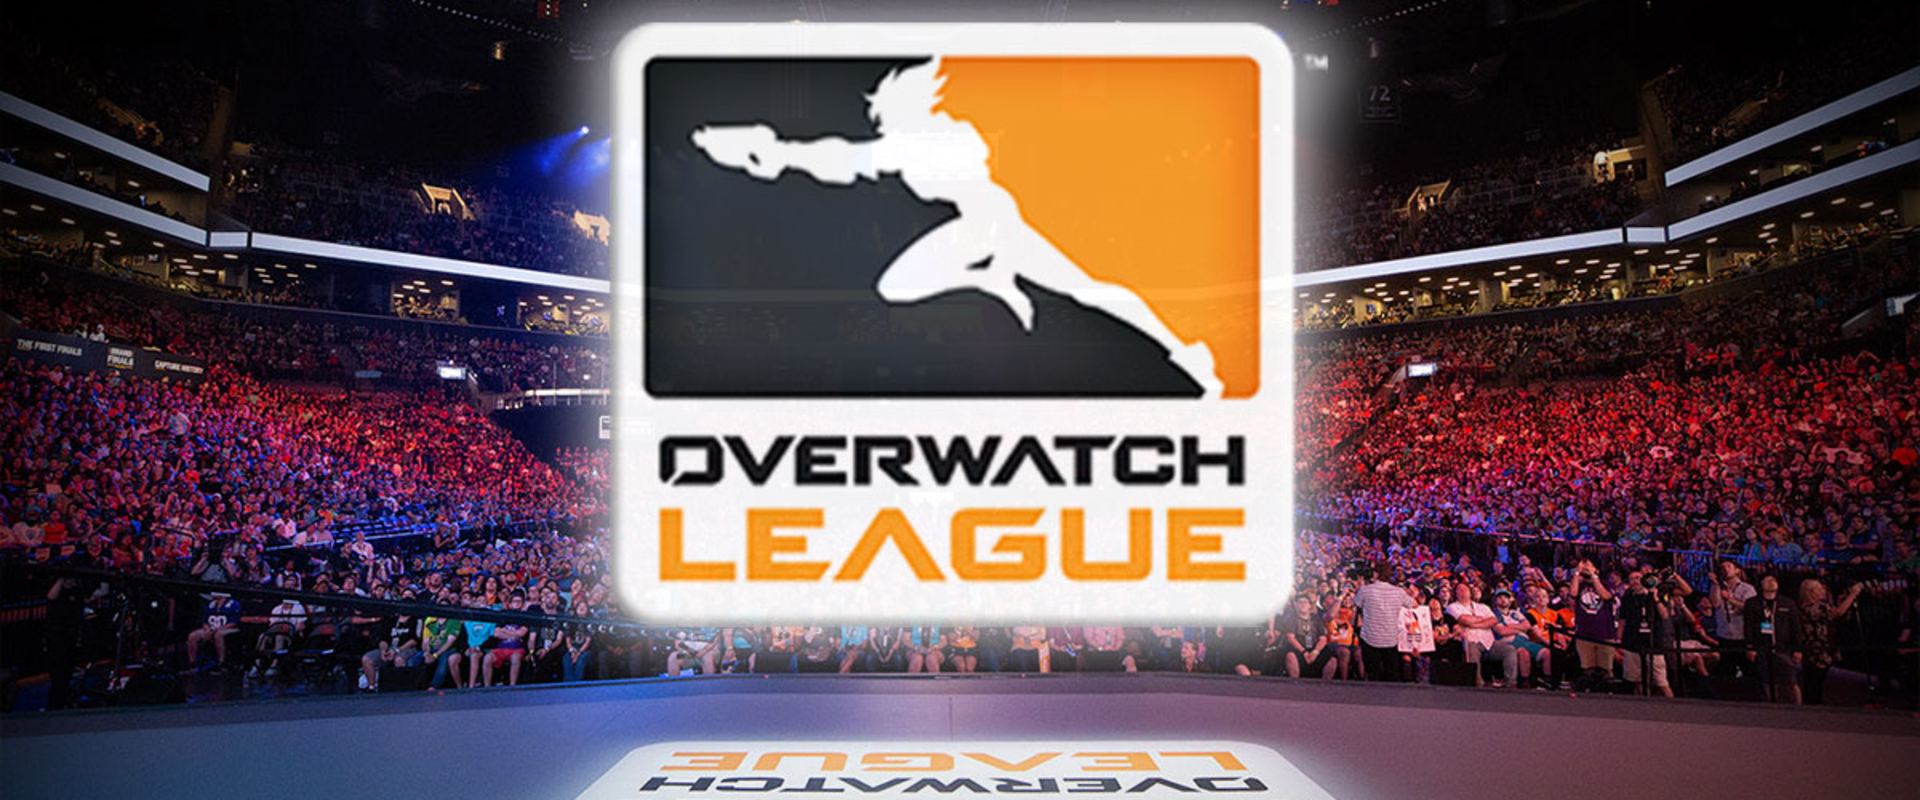 Ma éjjel indul az Overwatch League második szezonja!